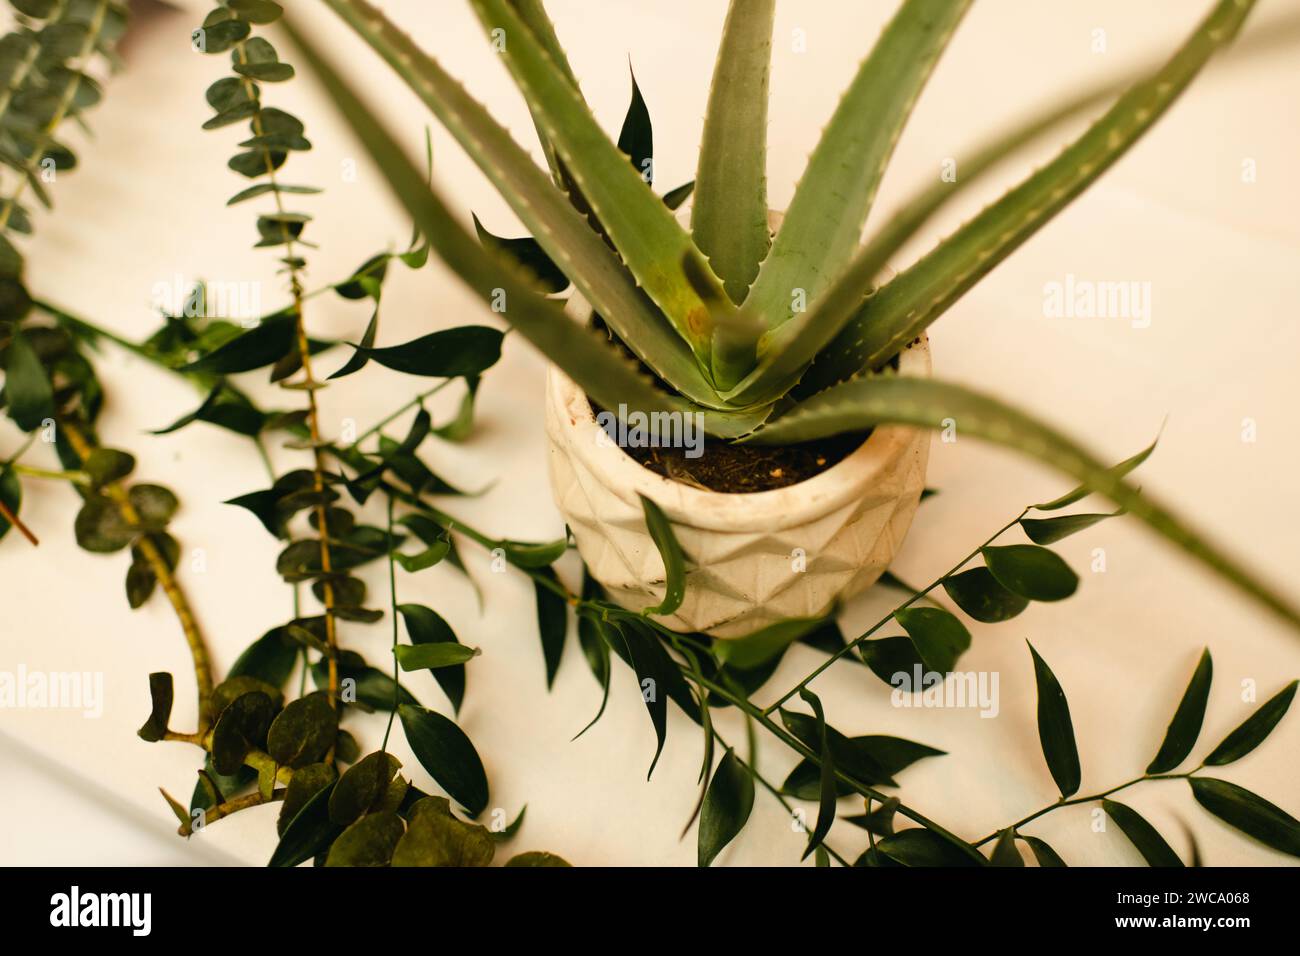 Aloe vera plante en pot entourée de branches de verdure Banque D'Images